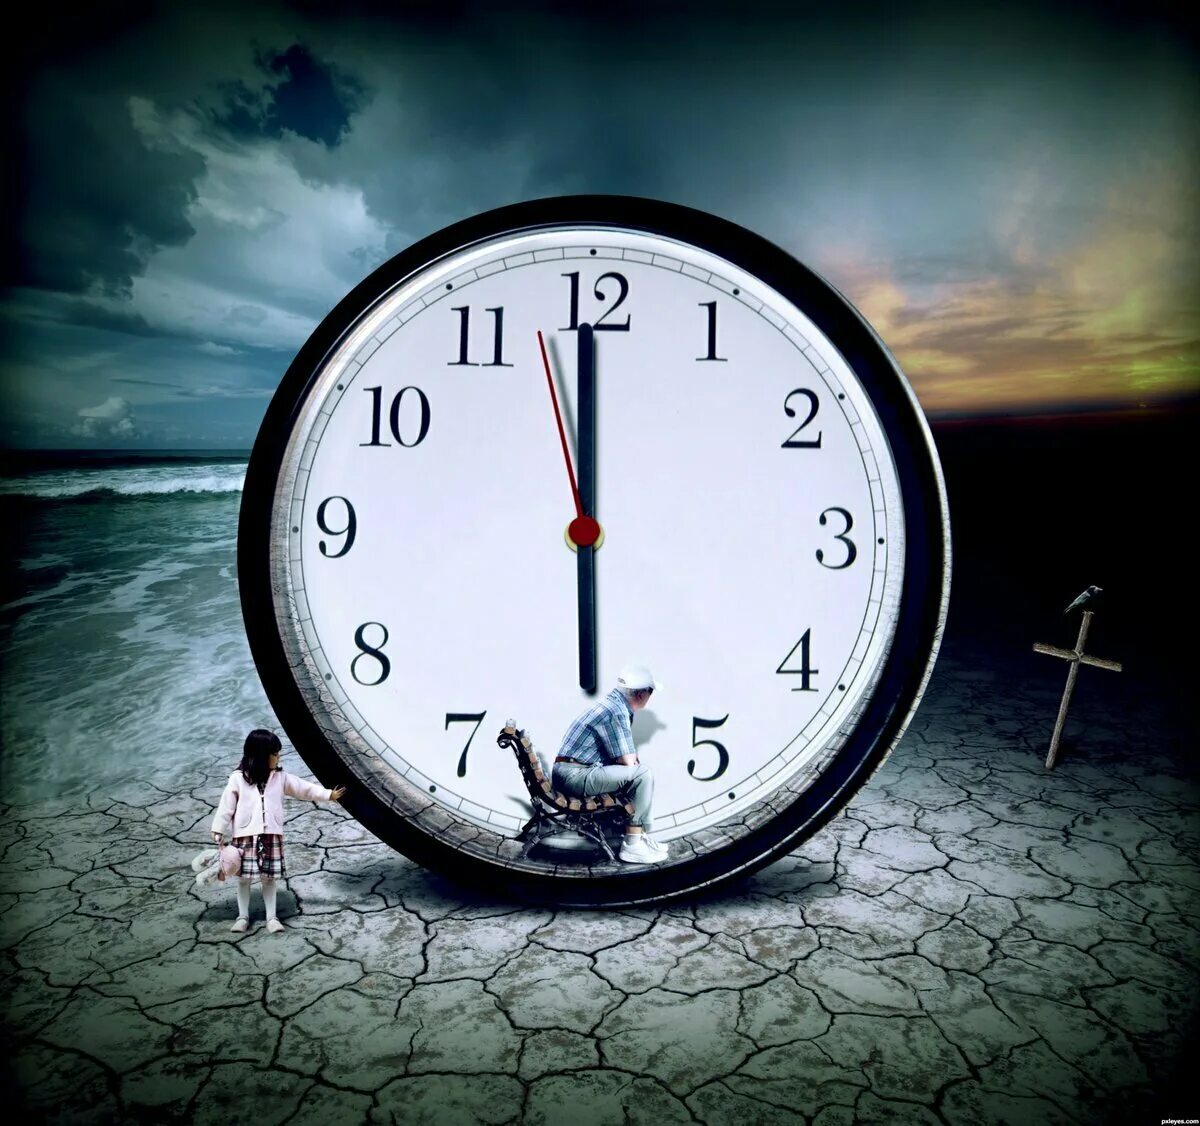 Часы бегут. А время уходит. Изображение времени. Медленные часы.